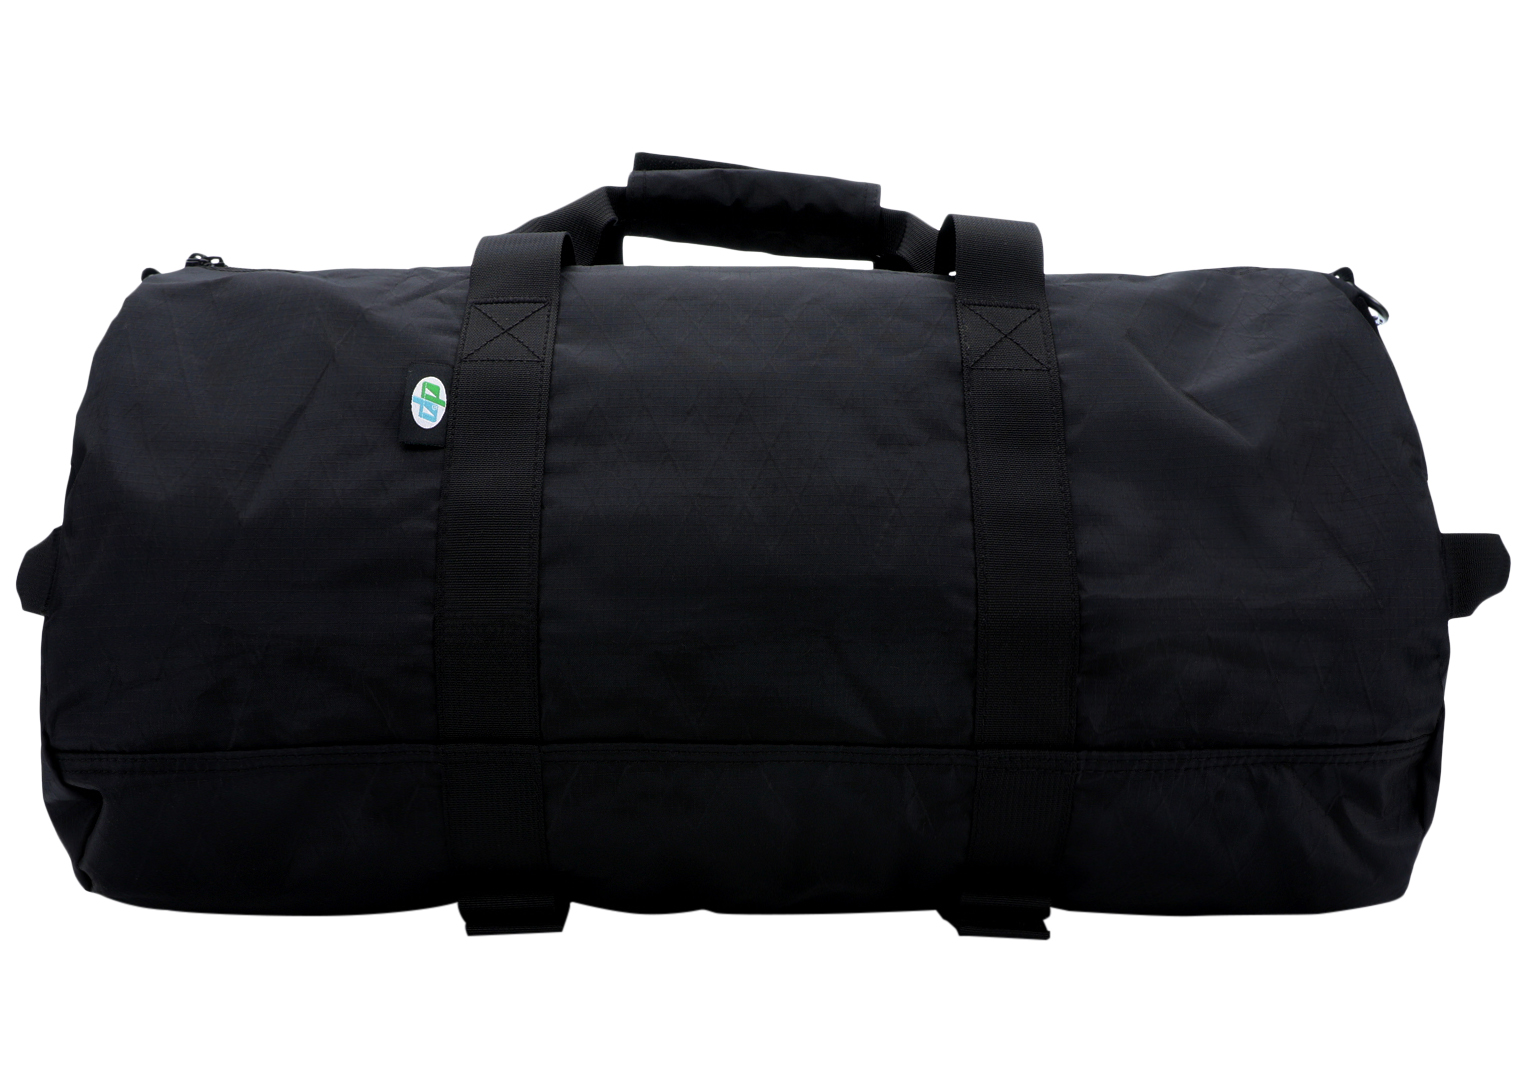 Supreme Duffle Bag (FW18) Black - FW18 - US